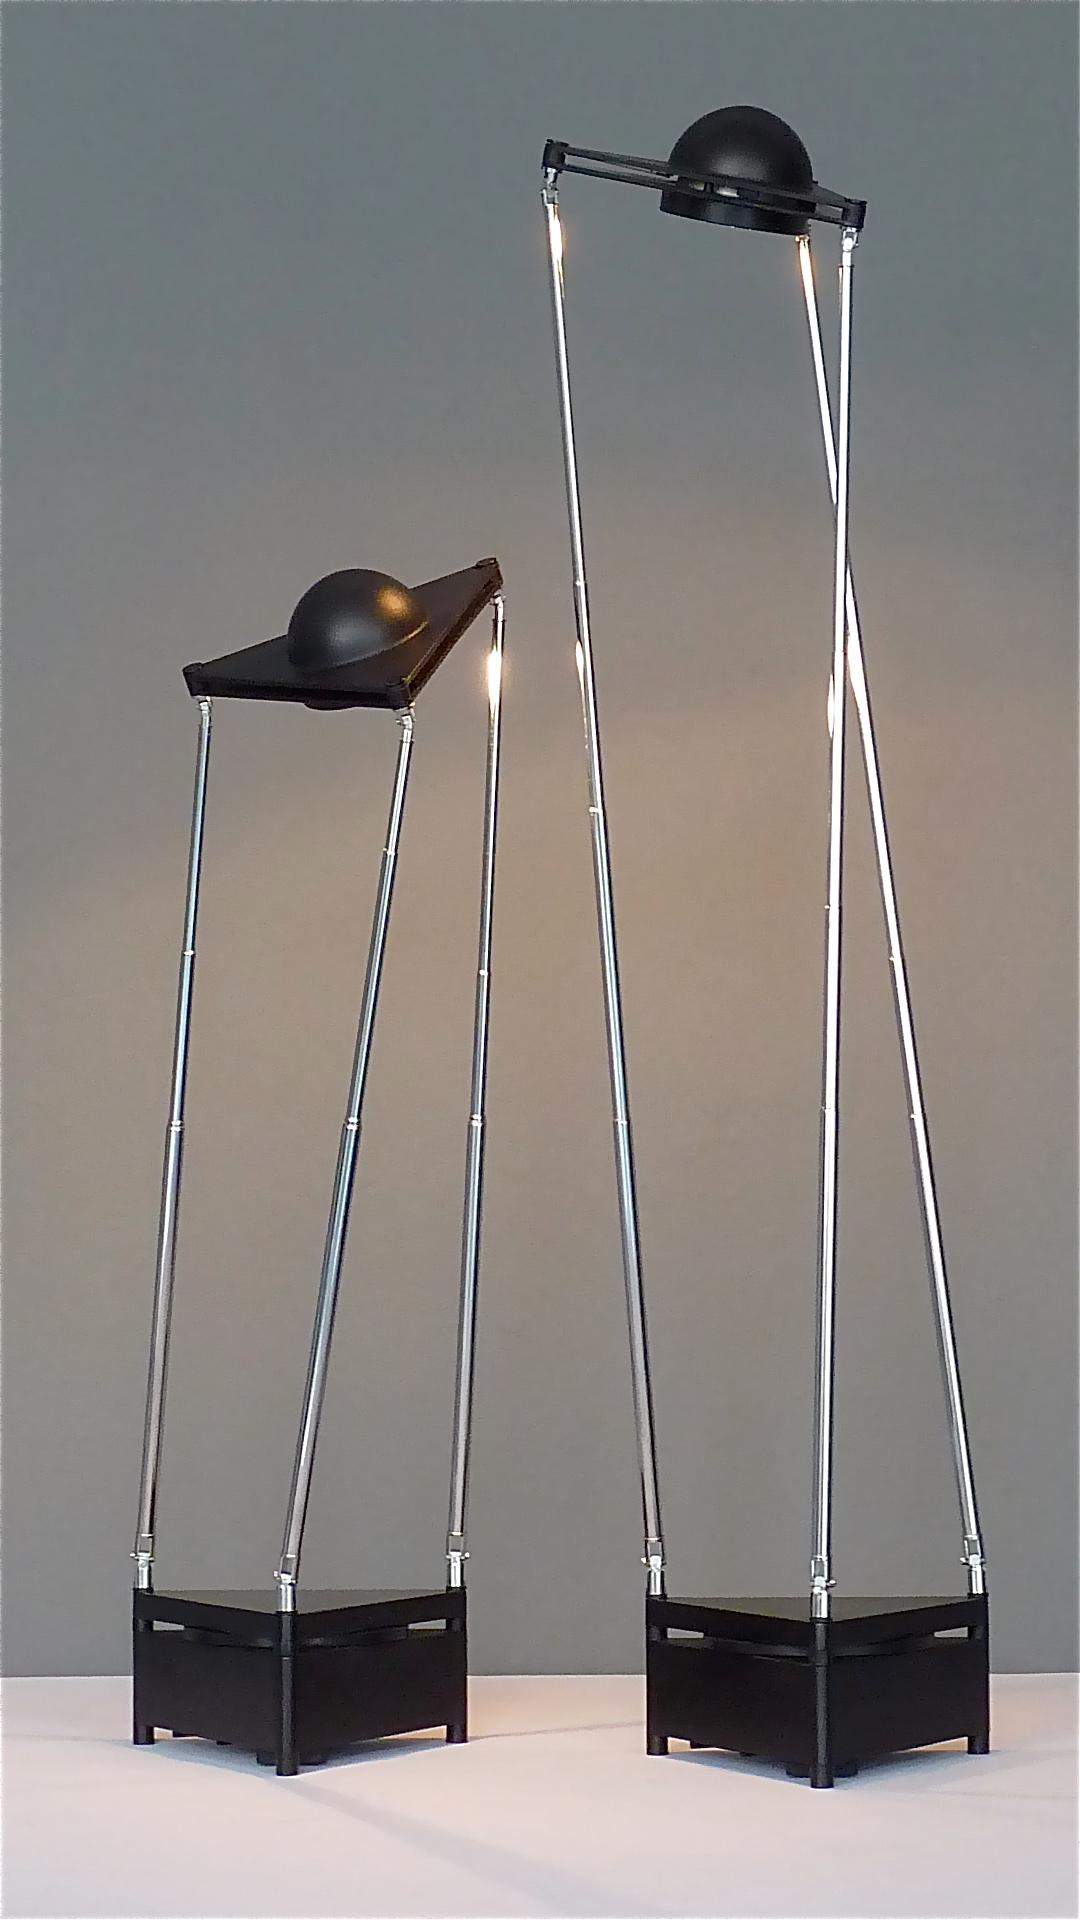 Pair Sculptural Table Lamps by F.A. Porsche Lucitalia Chrome Metal Black Plastic 7